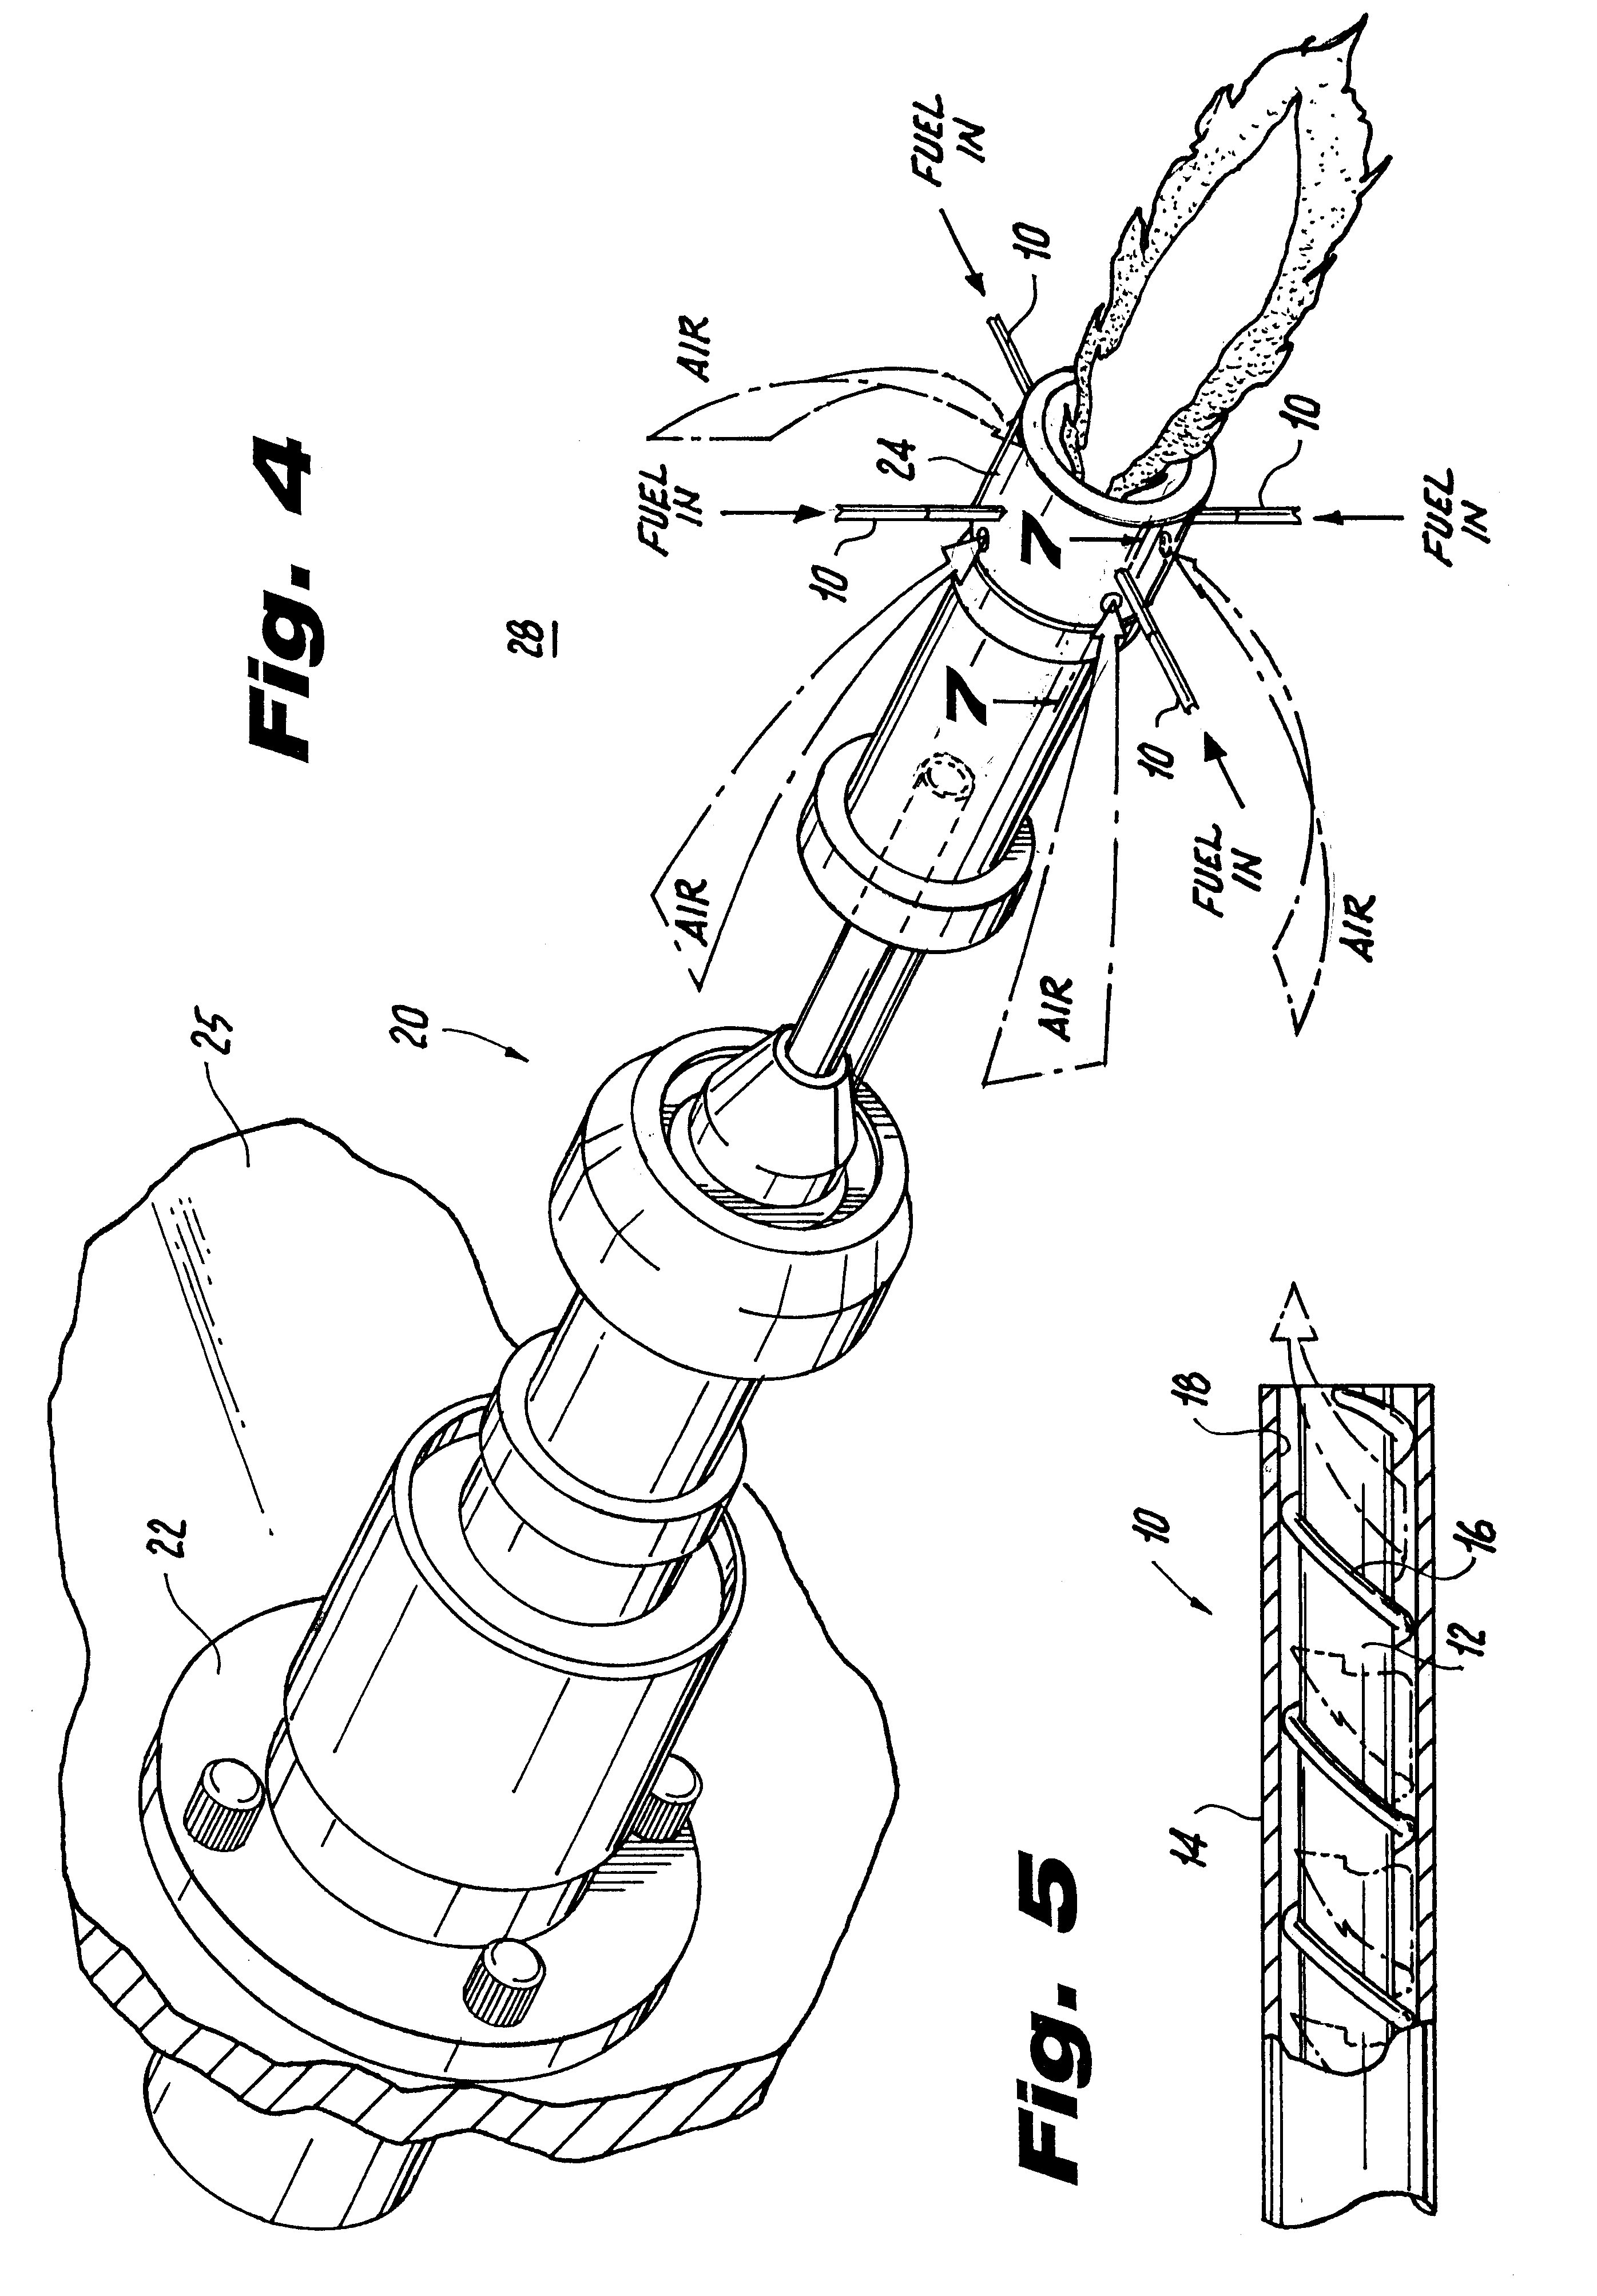 Airblast fuel atomization system